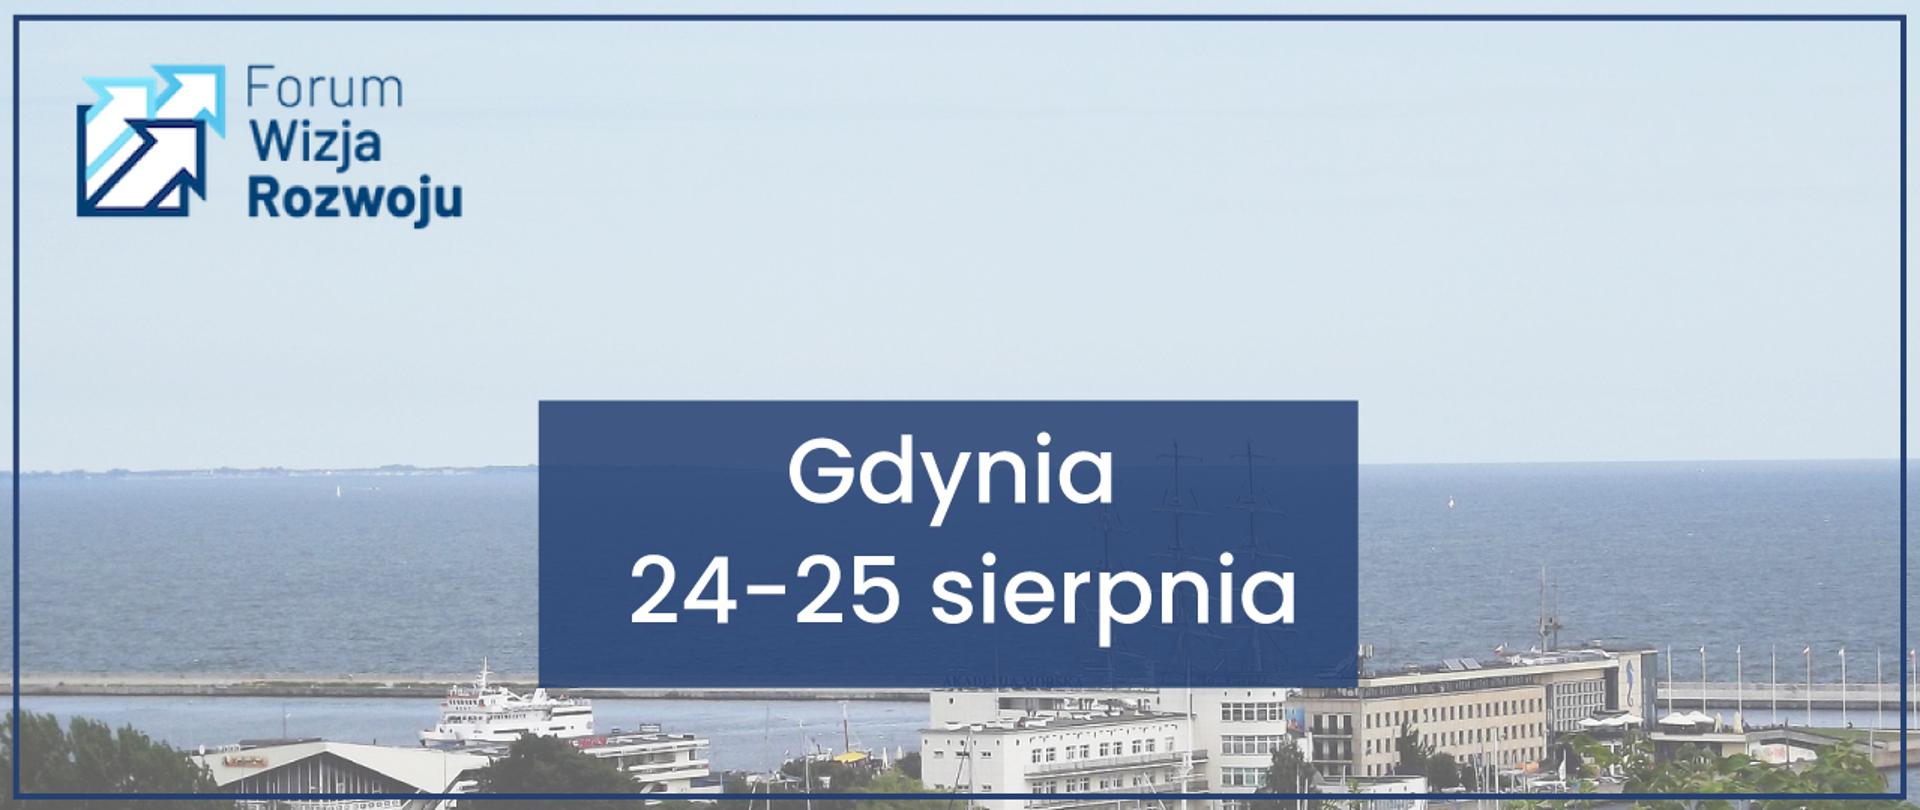 W lewym górny rogu logo Forum Wizja Rozwoju. W centralnej części napis: Gdynia 24-25 sierpnia. W tle zdjęcie - panorama portu w Gdyni.